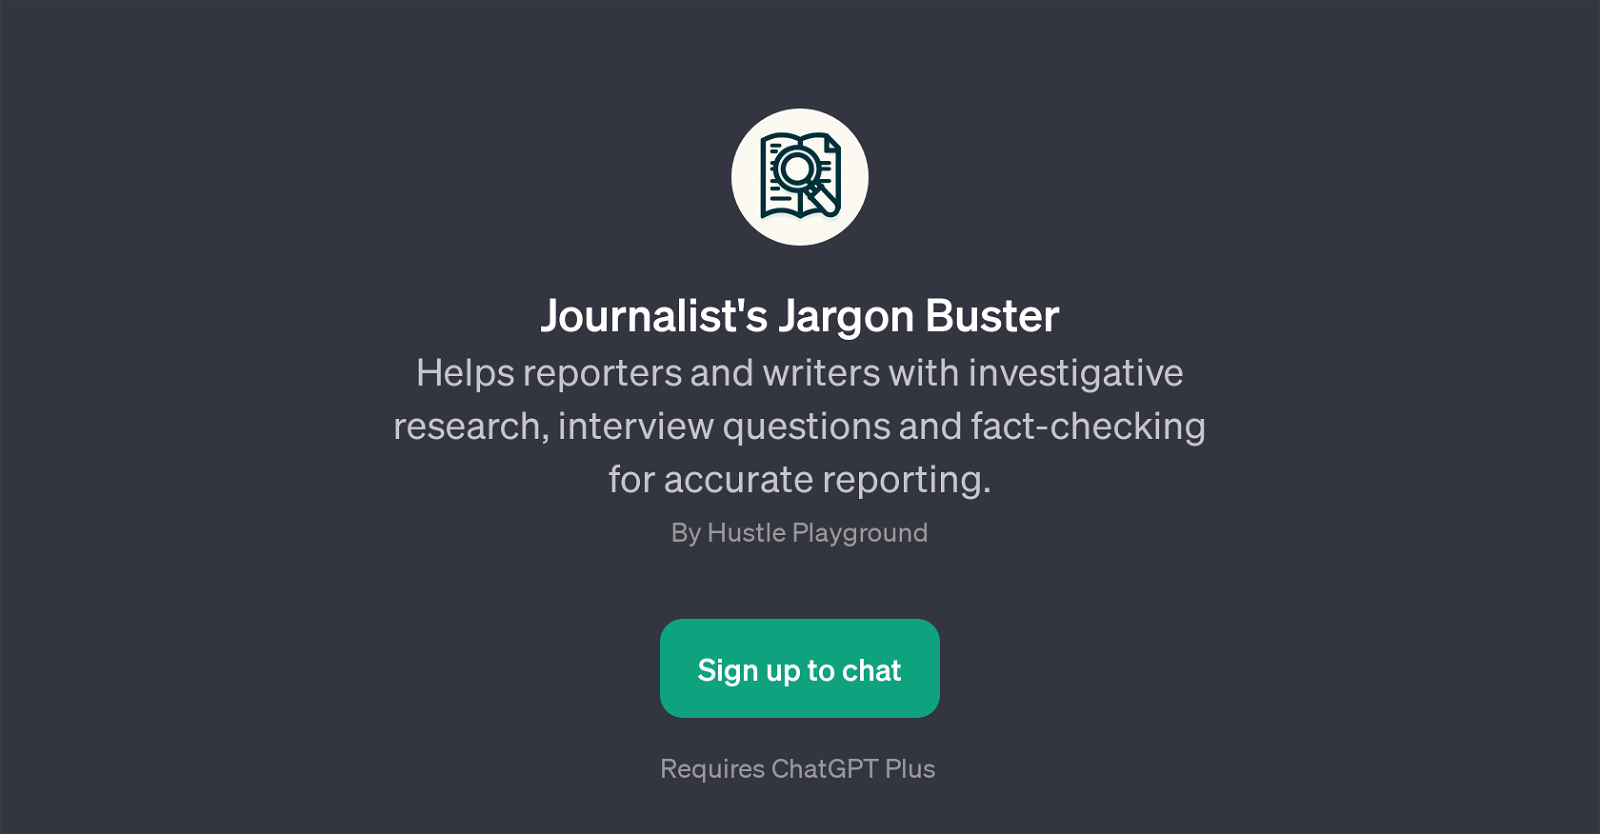 Journalist's Jargon Buster website